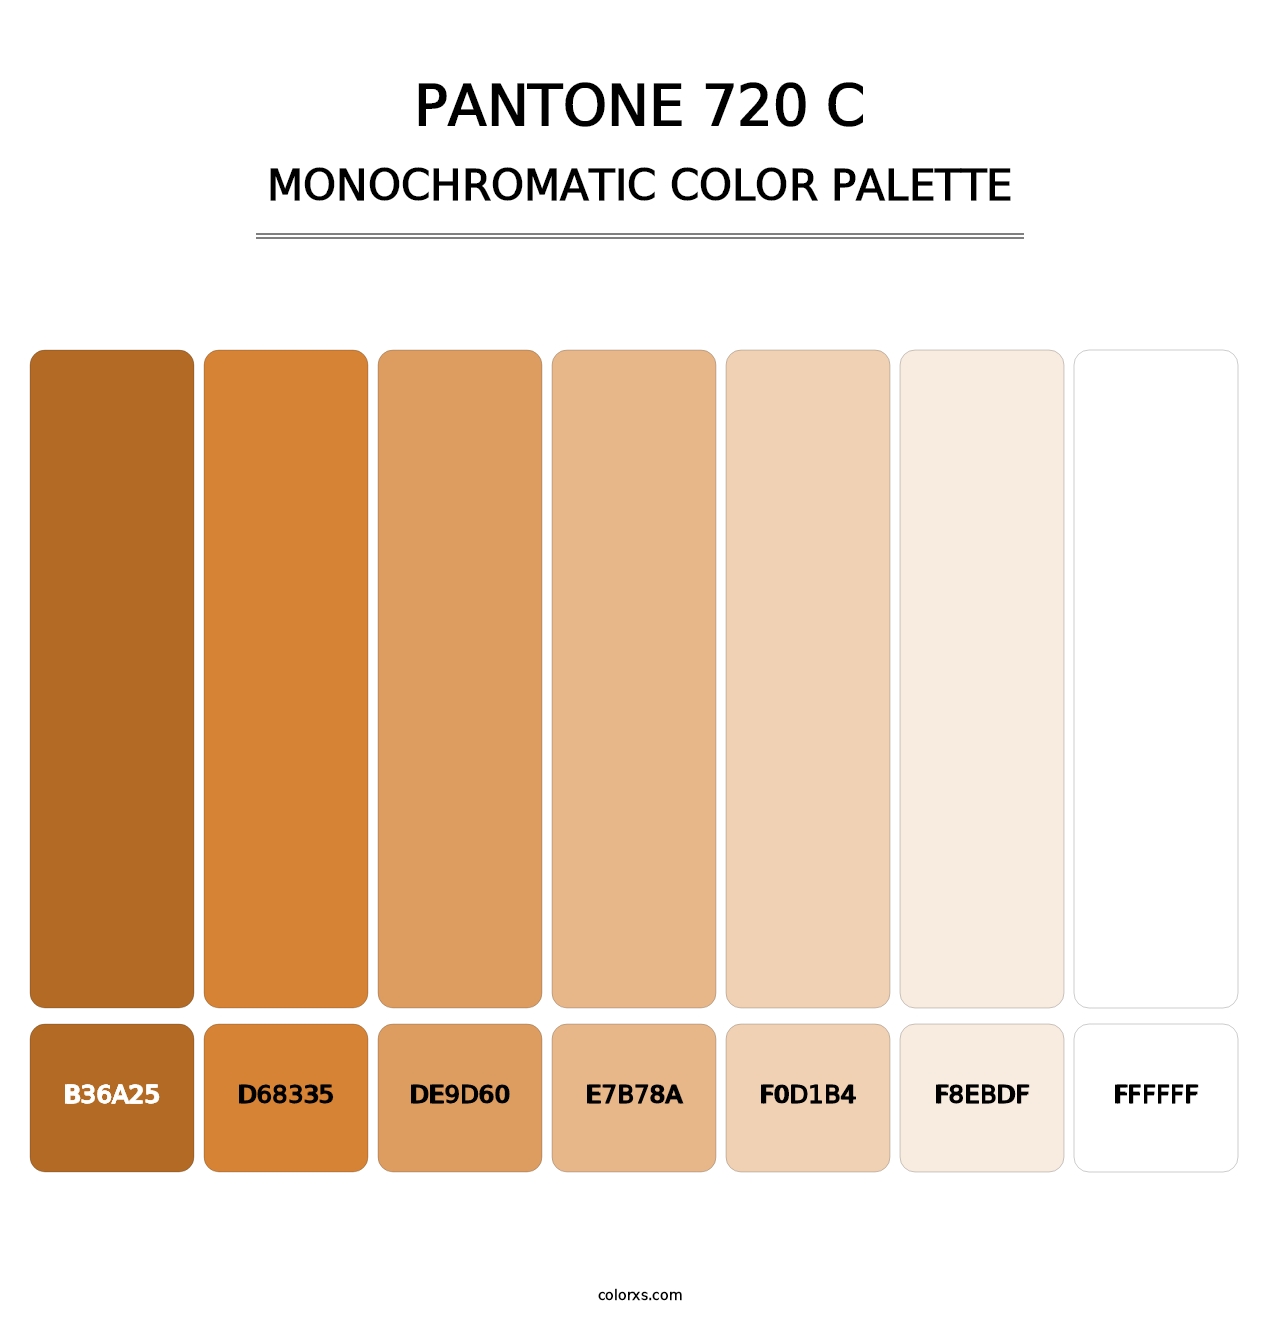 PANTONE 720 C - Monochromatic Color Palette